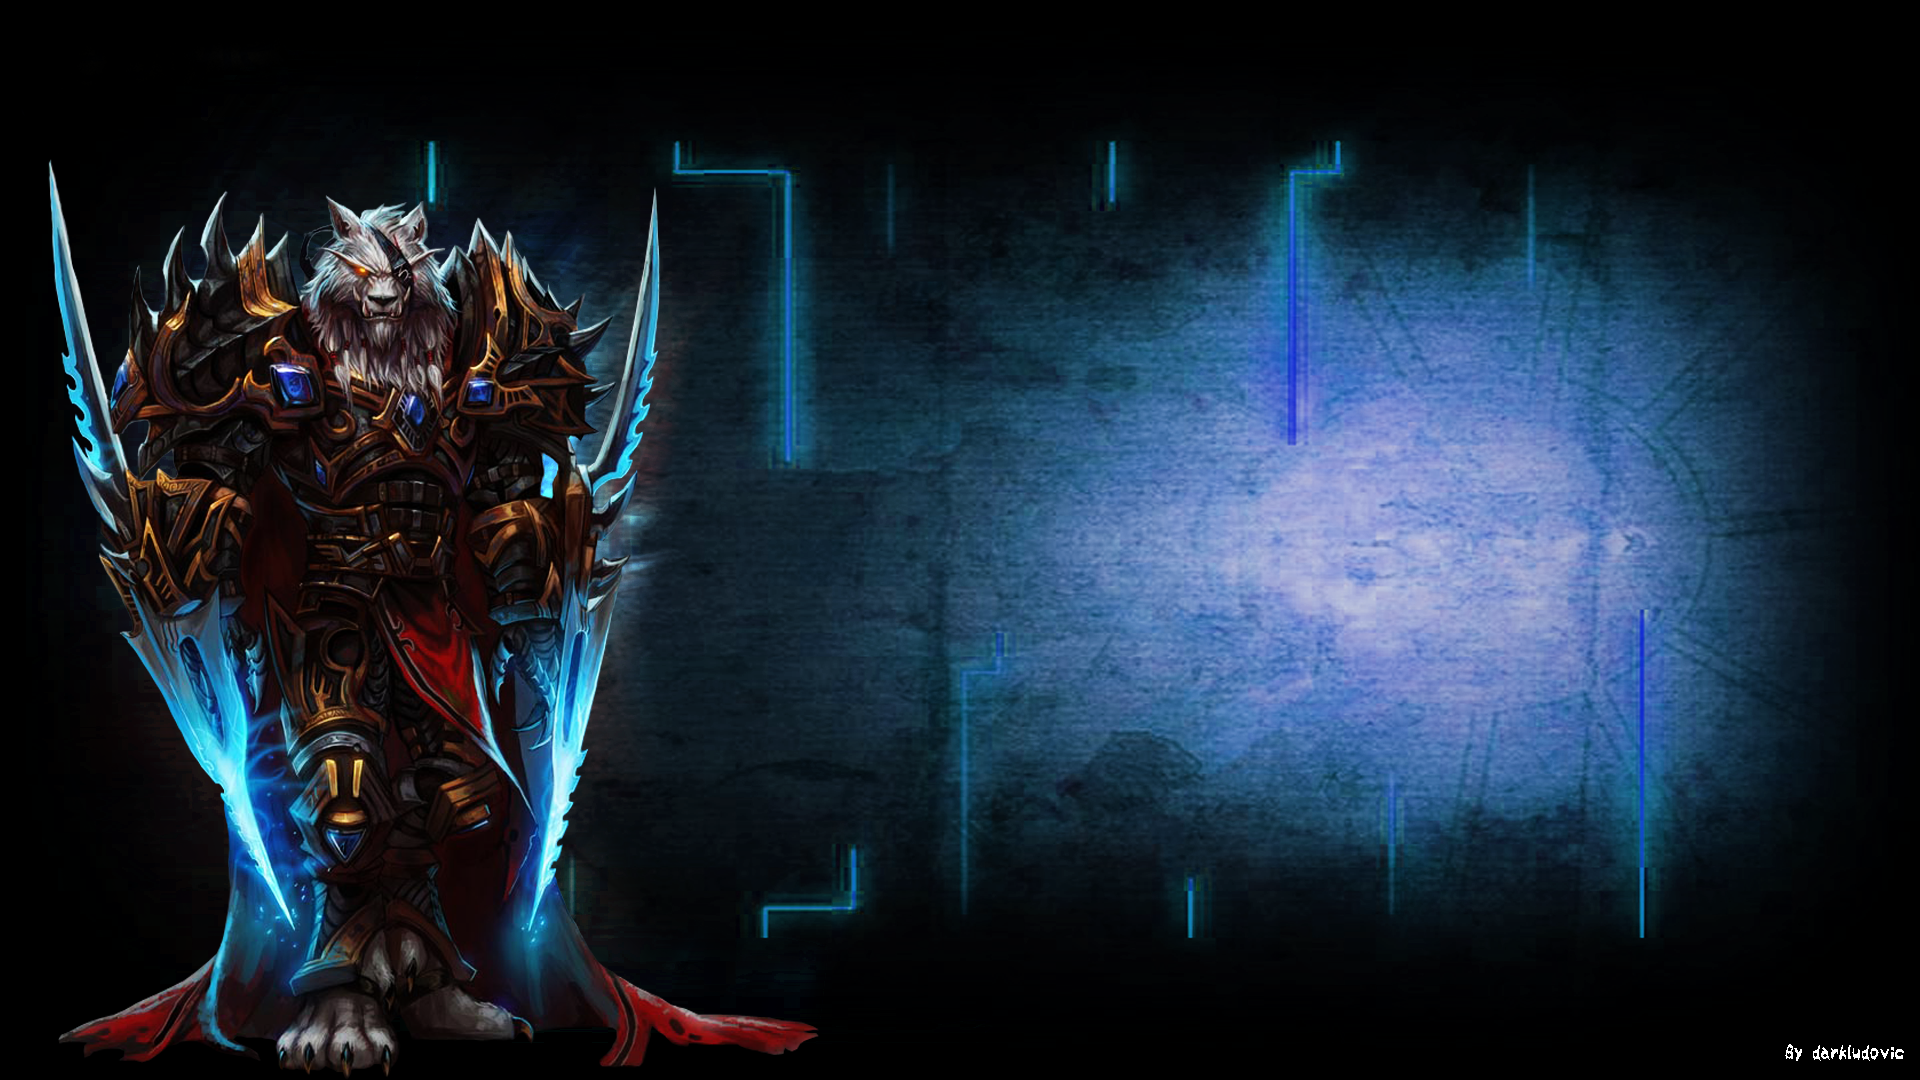 Wold Of Warcraft Worgen Wallpaper By Darkludovic